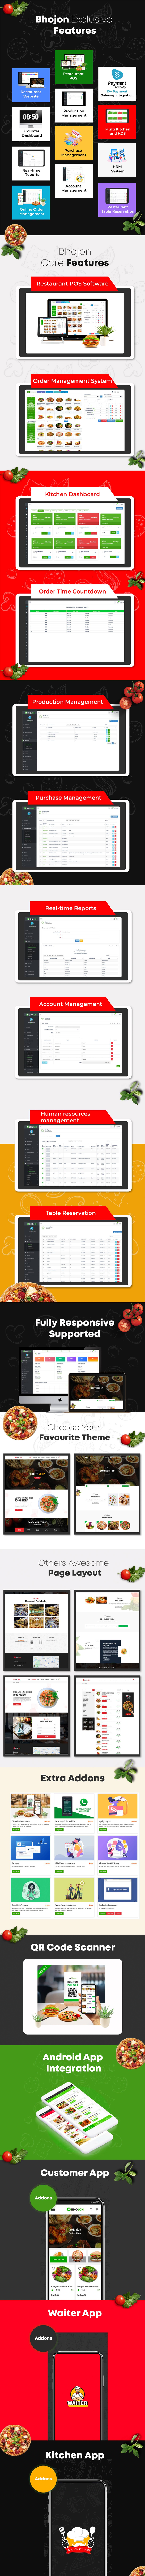 Bhojon - Best Restaurant Management Software with Restaurant Website - 1